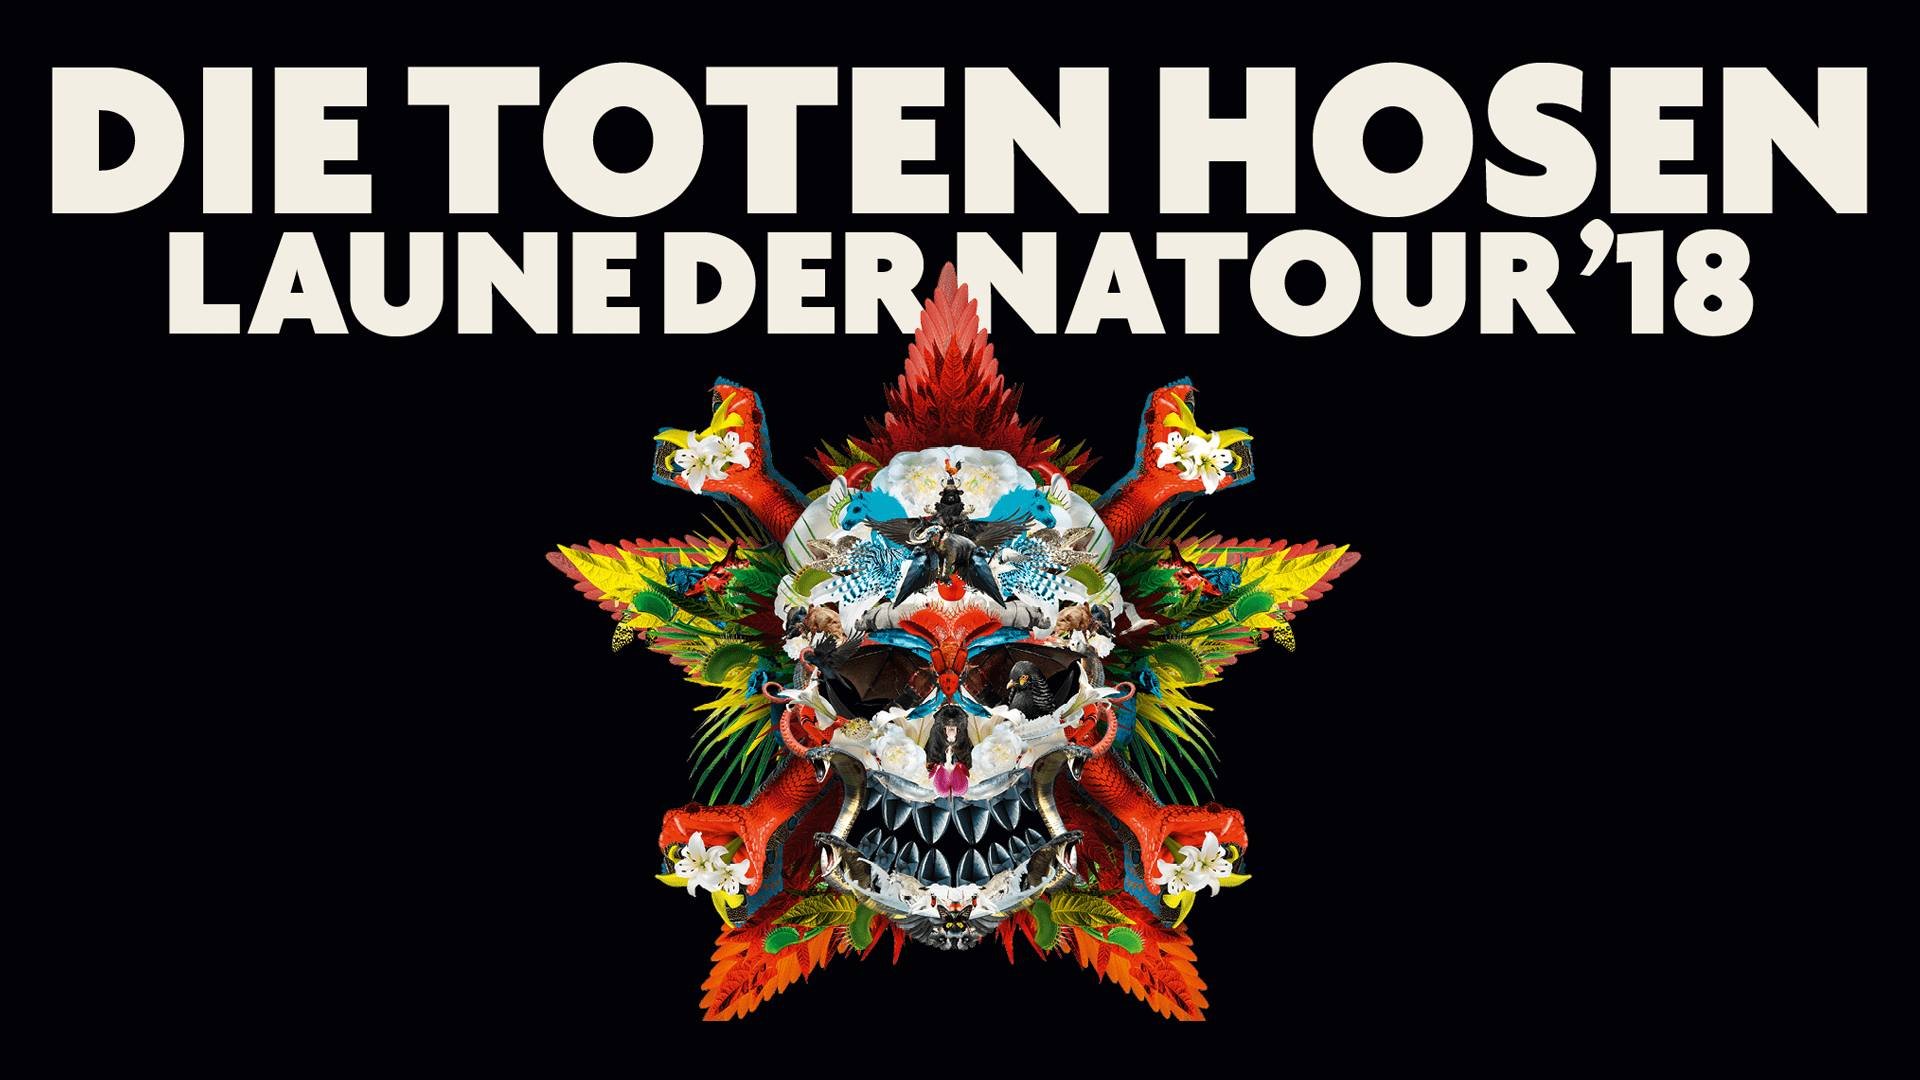 Die Toten Hosen at Waldbühne (Berlin) on 7 Jun 2018 | Last.fm